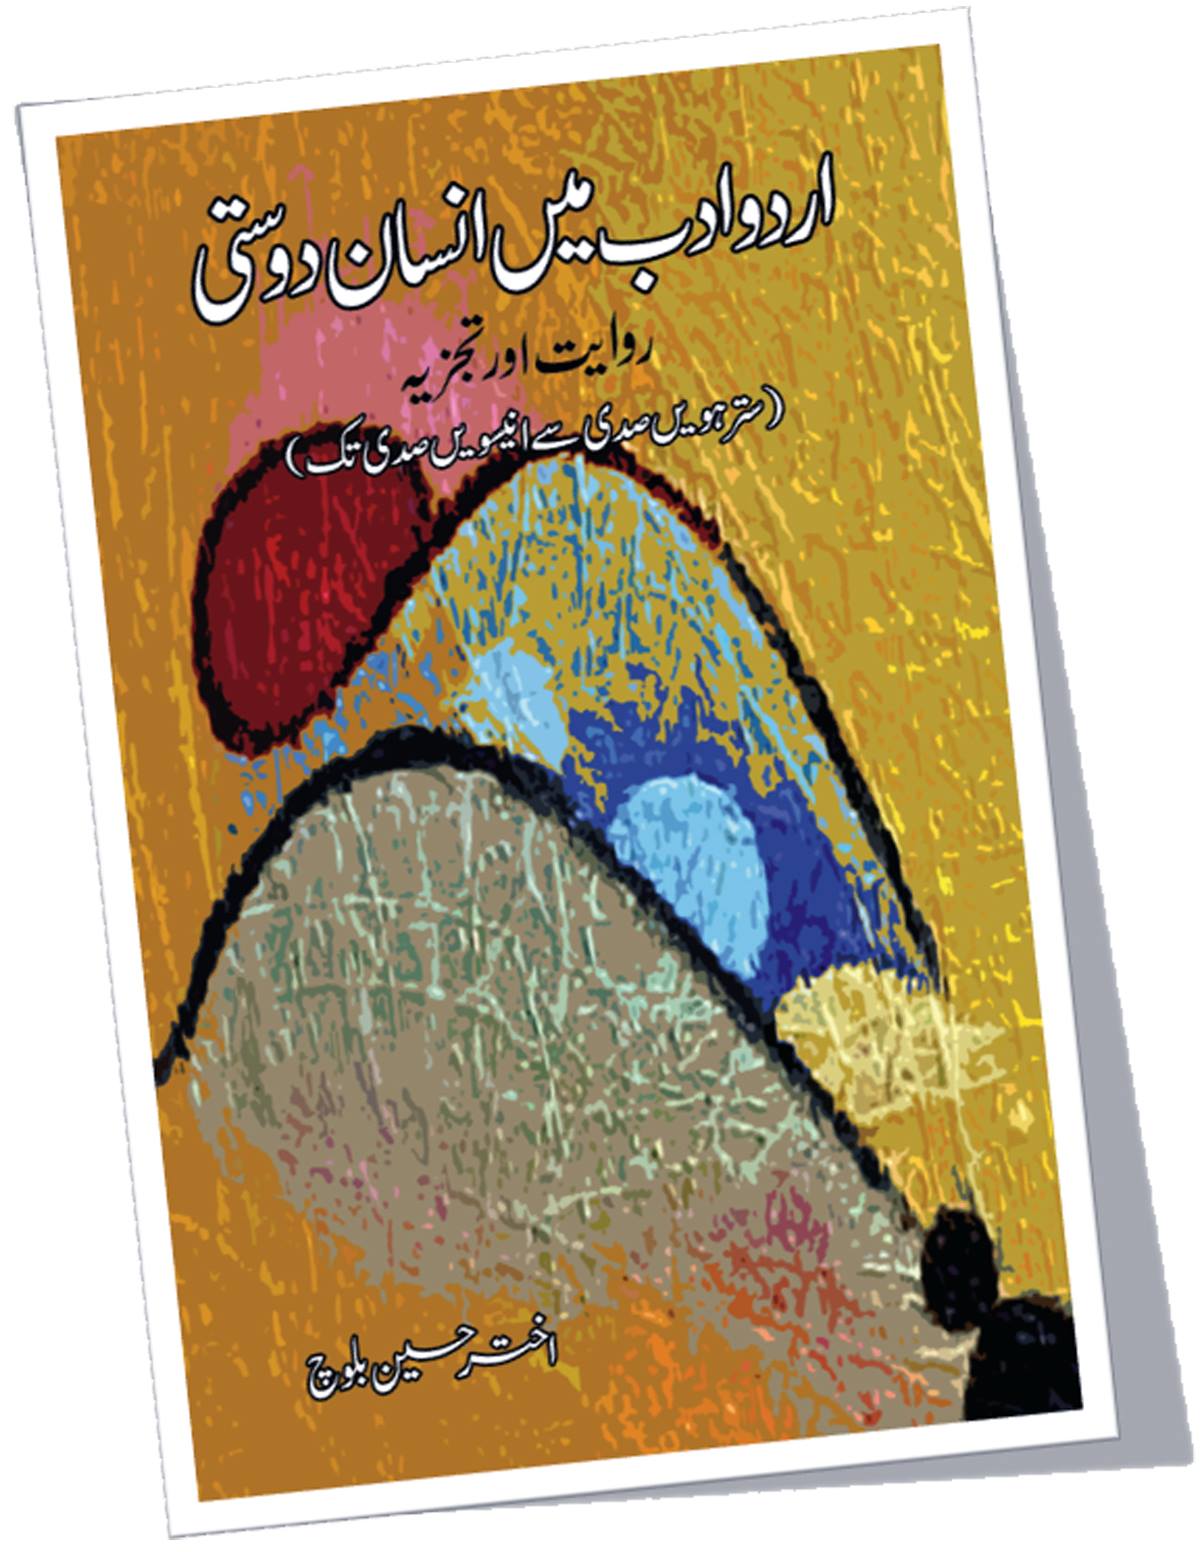 اردو ادب میں انسان دوستی | Urdu adb may ensan dosti Fiction House